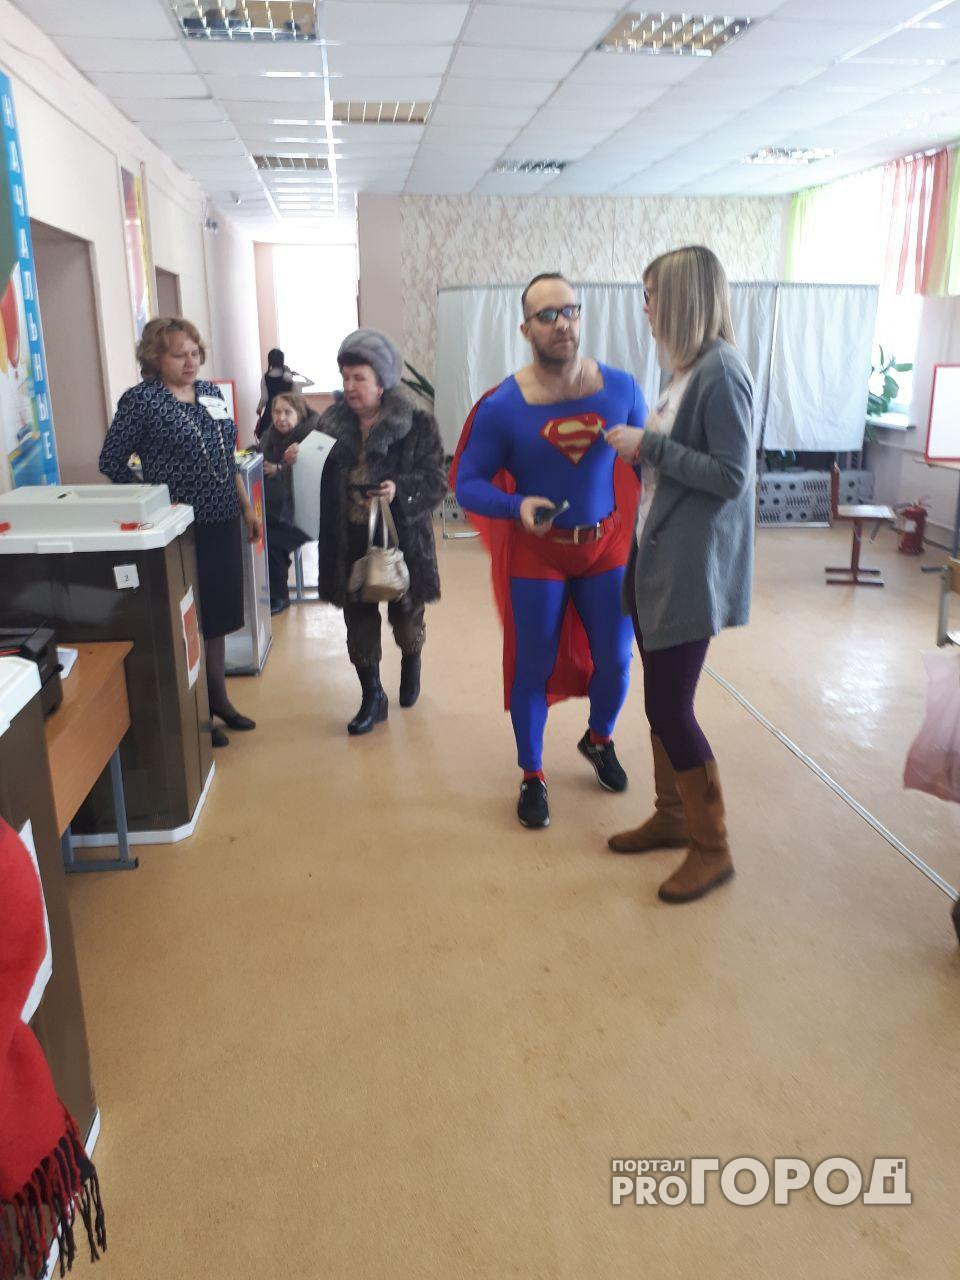 Стали известны новые подробности визита Супермена на ярославские выборы